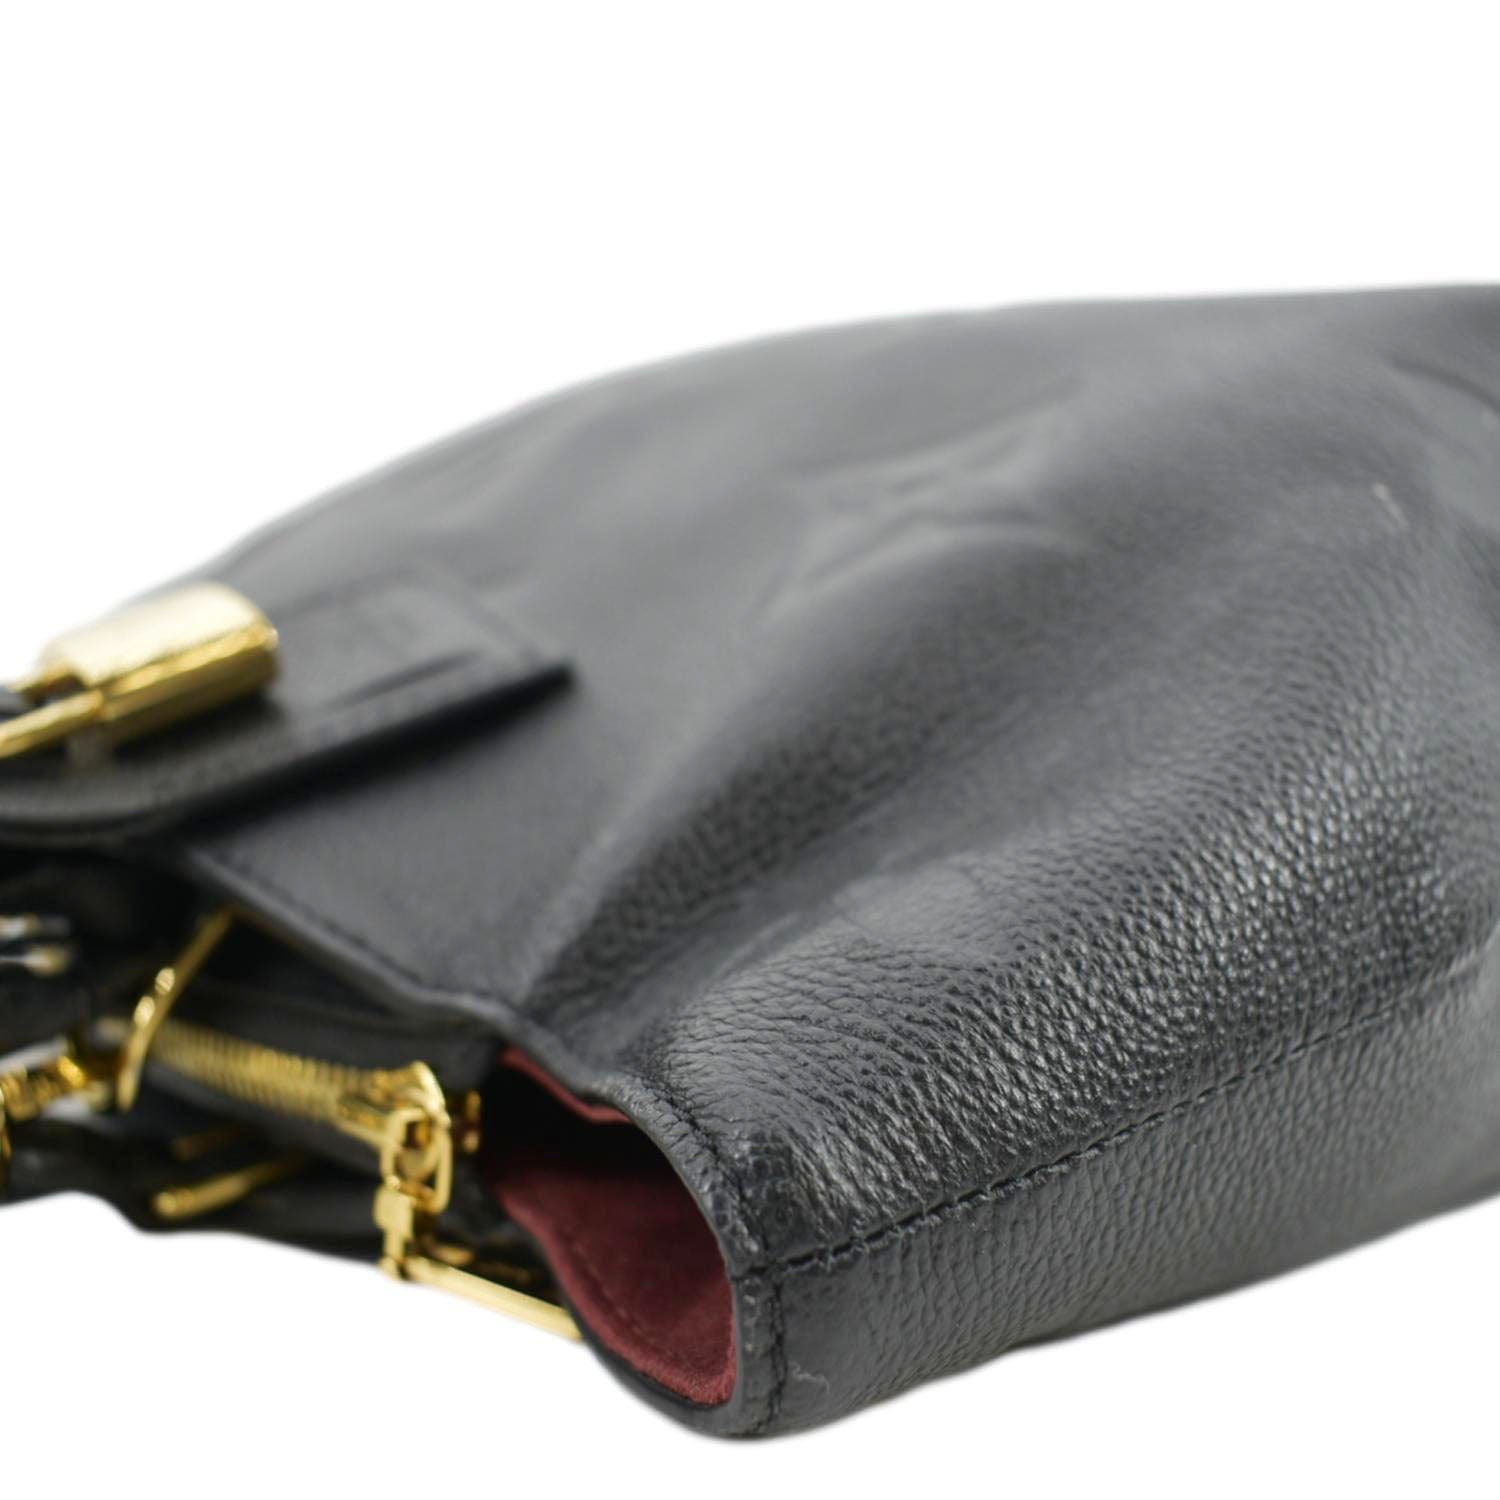 Louis Vuitton Petit Palais Monogram Empreinte Leather Shoulder Bag Black